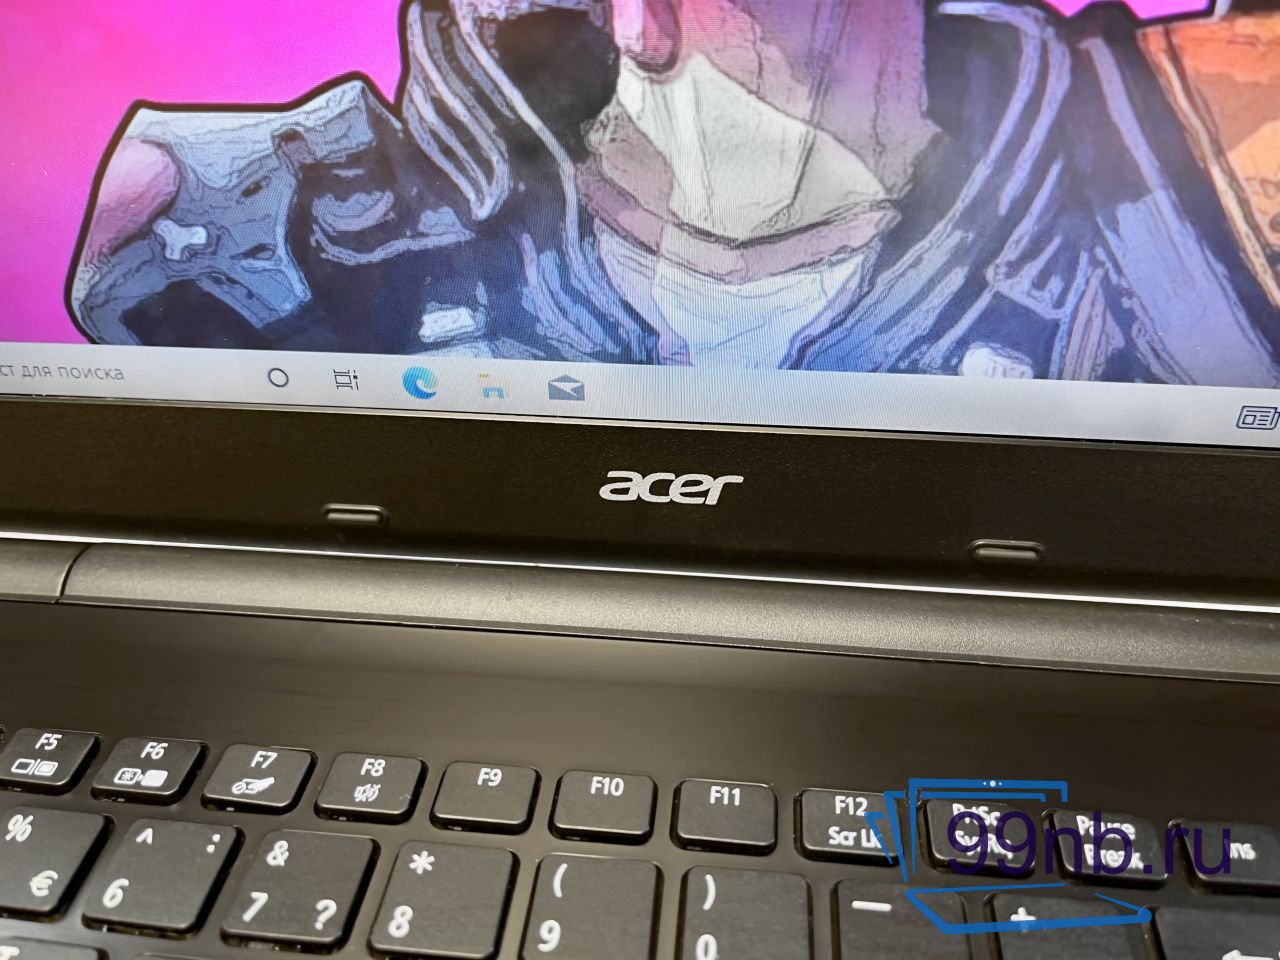  Игровой ноутбук Acer Aspire в наличии на Geforce